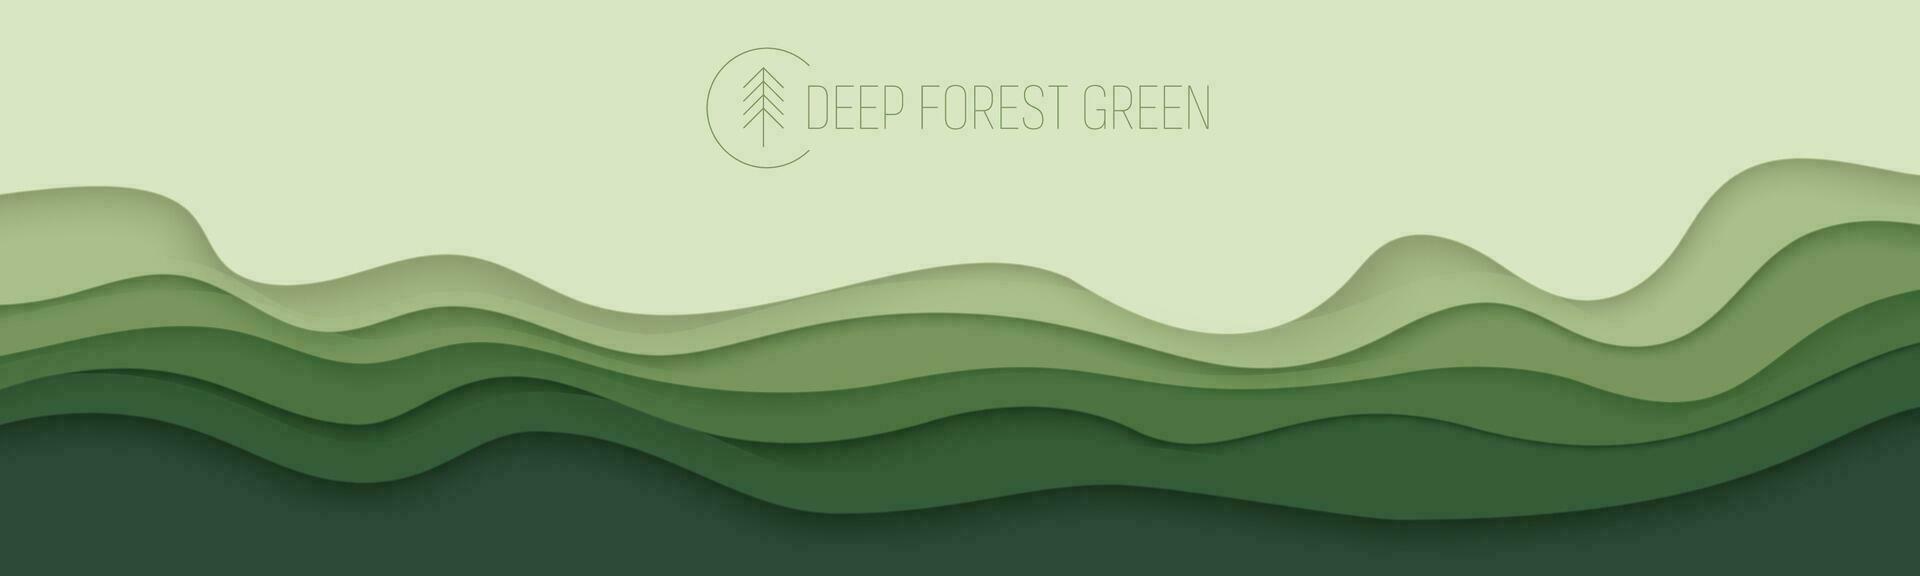 djup skog grön vågor, papper konst baner. natur grönska Färg affisch mall i papperssår stil. vektor illustration eps 10.